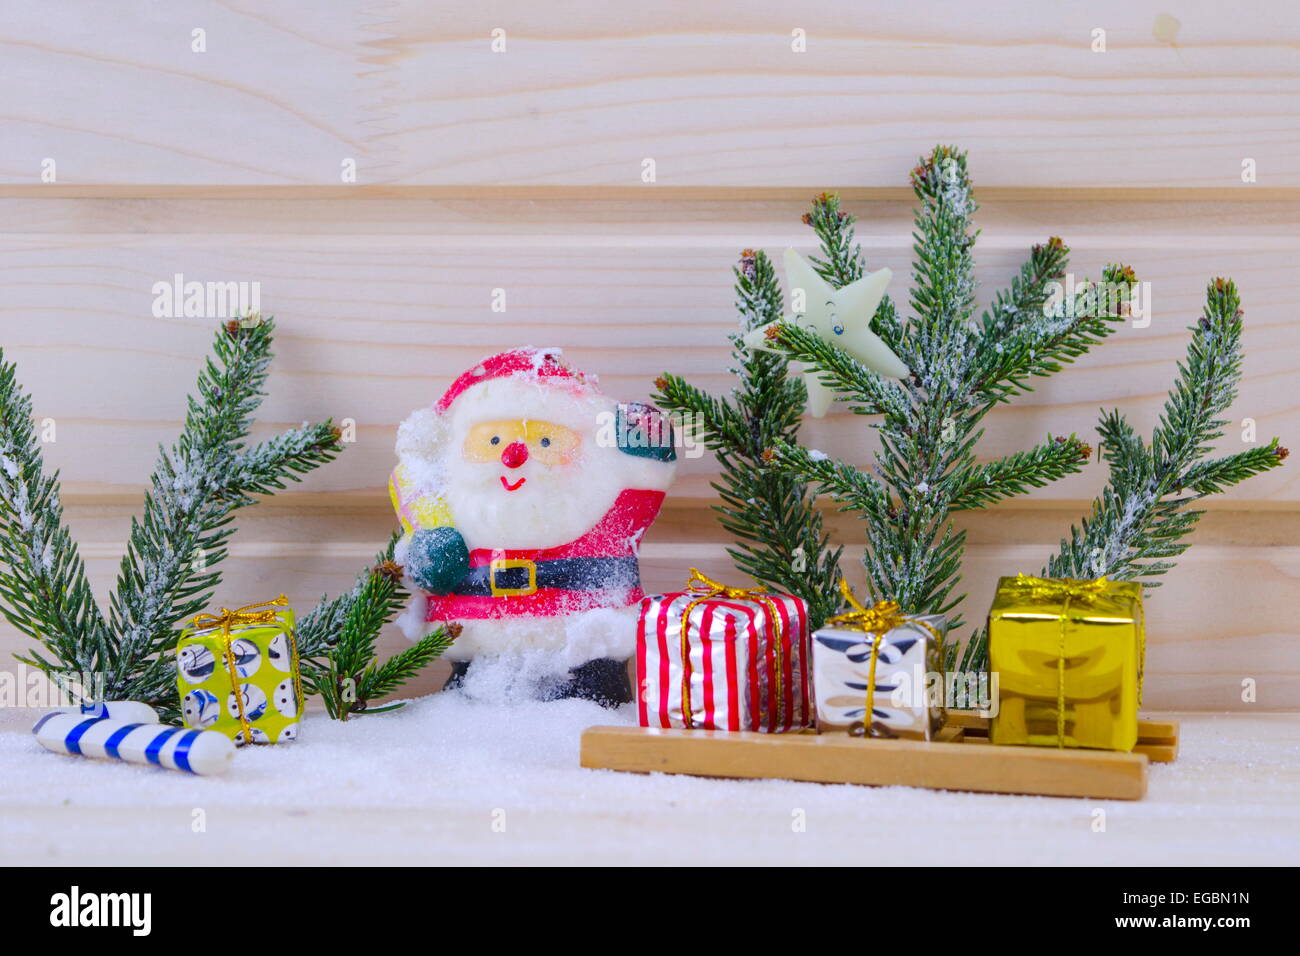 Toy Santa tra gli abeti e presenta su un nevoso superficie in legno Foto Stock